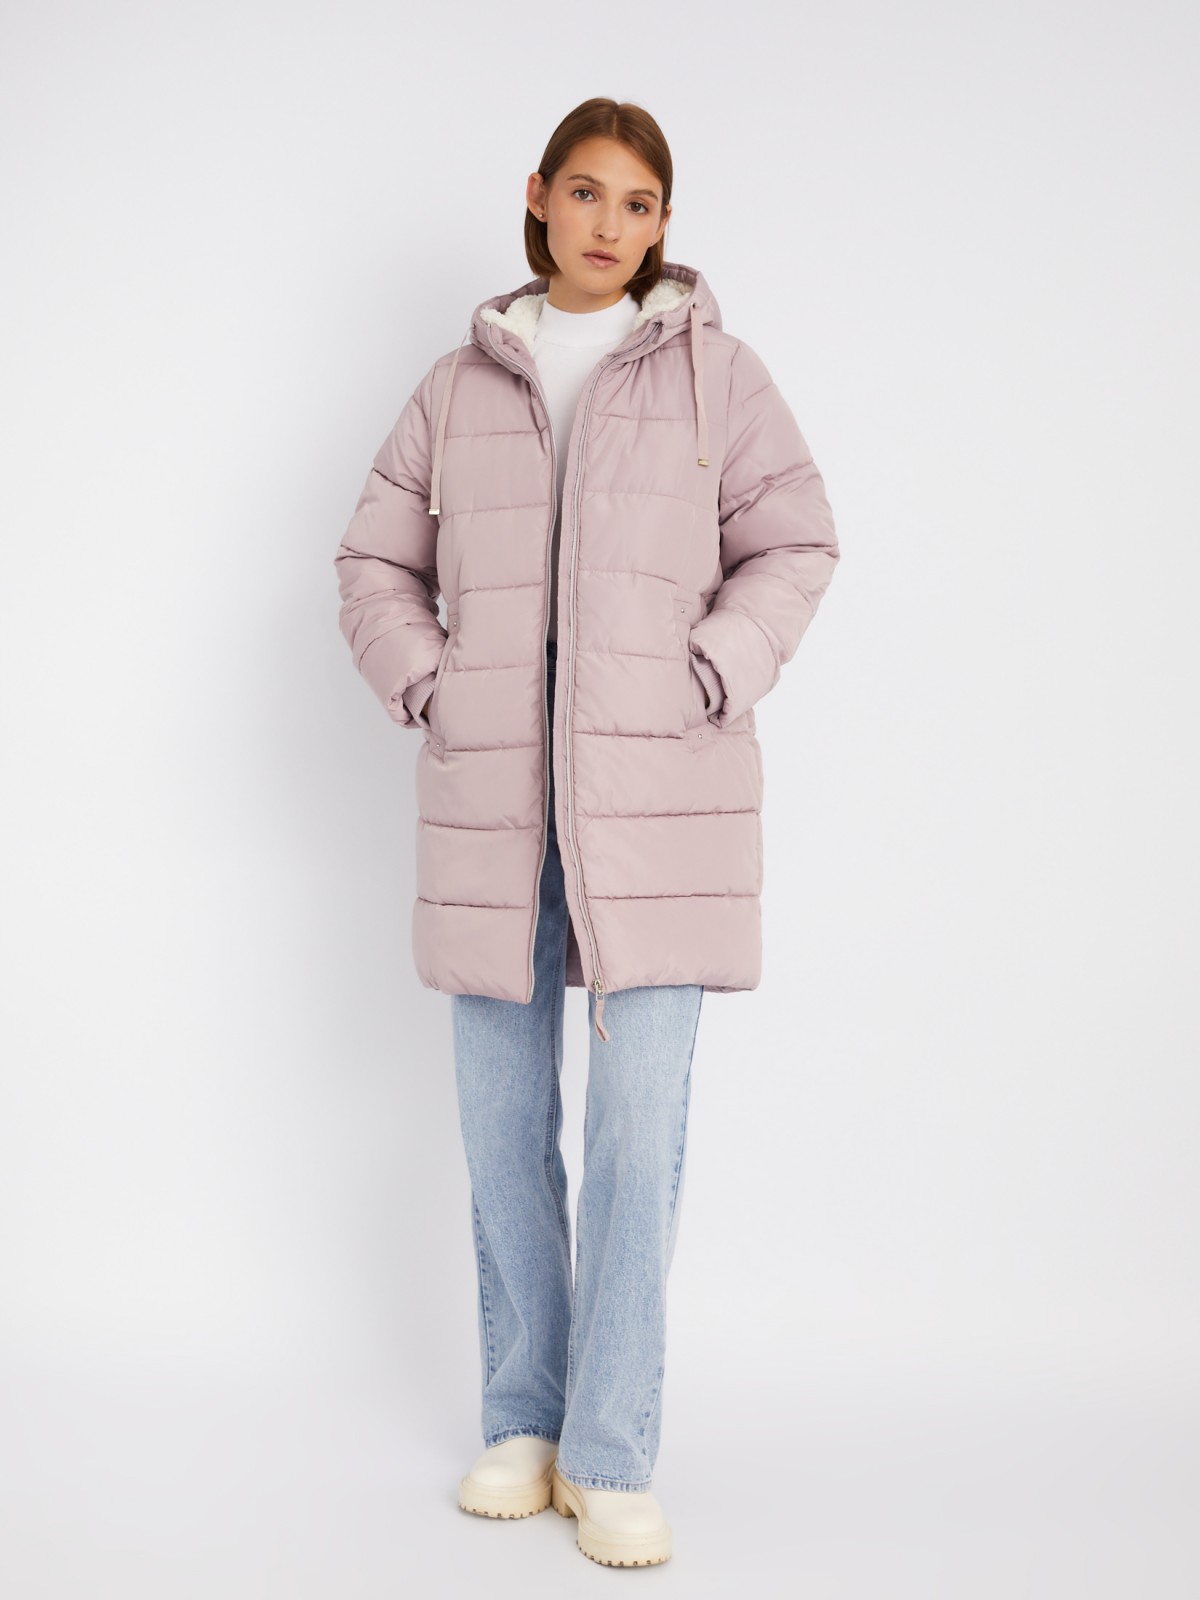 Тёплая куртка-пальто на молнии с капюшоном на подкладке из искусственного меха zolla 02333520L104, цвет лиловый, размер M - фото 2